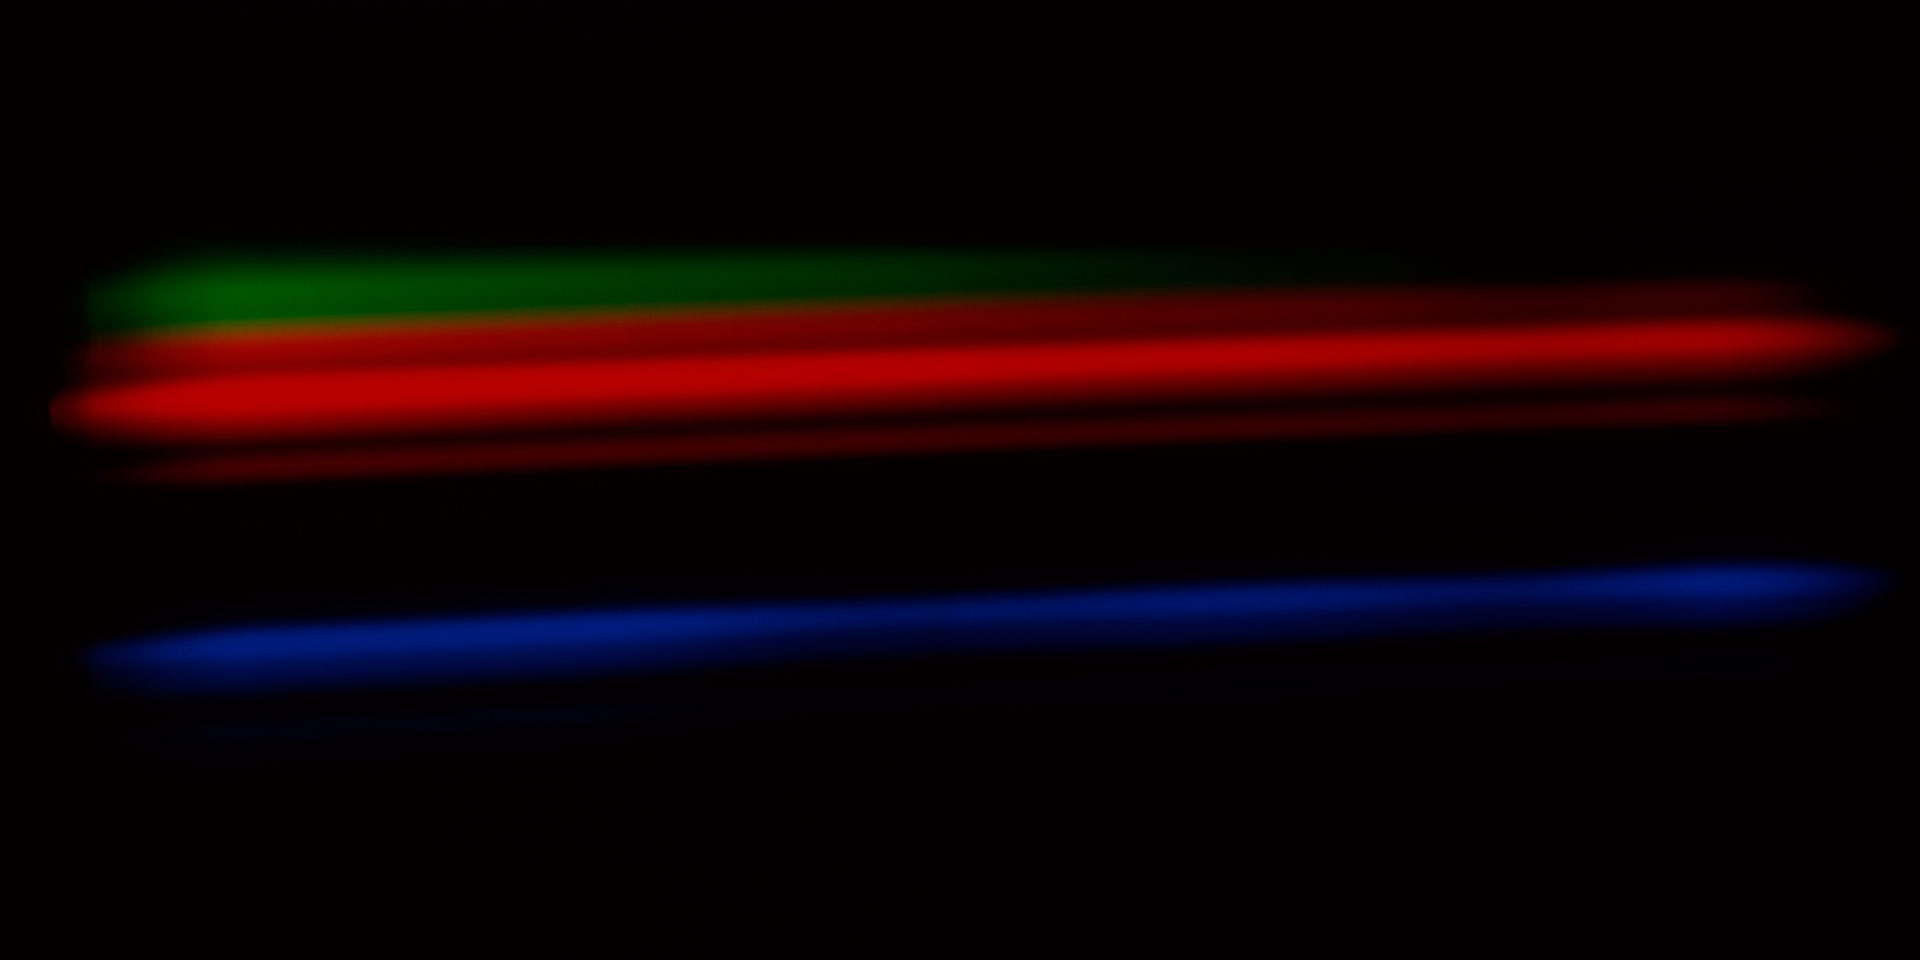 Emission Spectrum of Argon #2, 2011